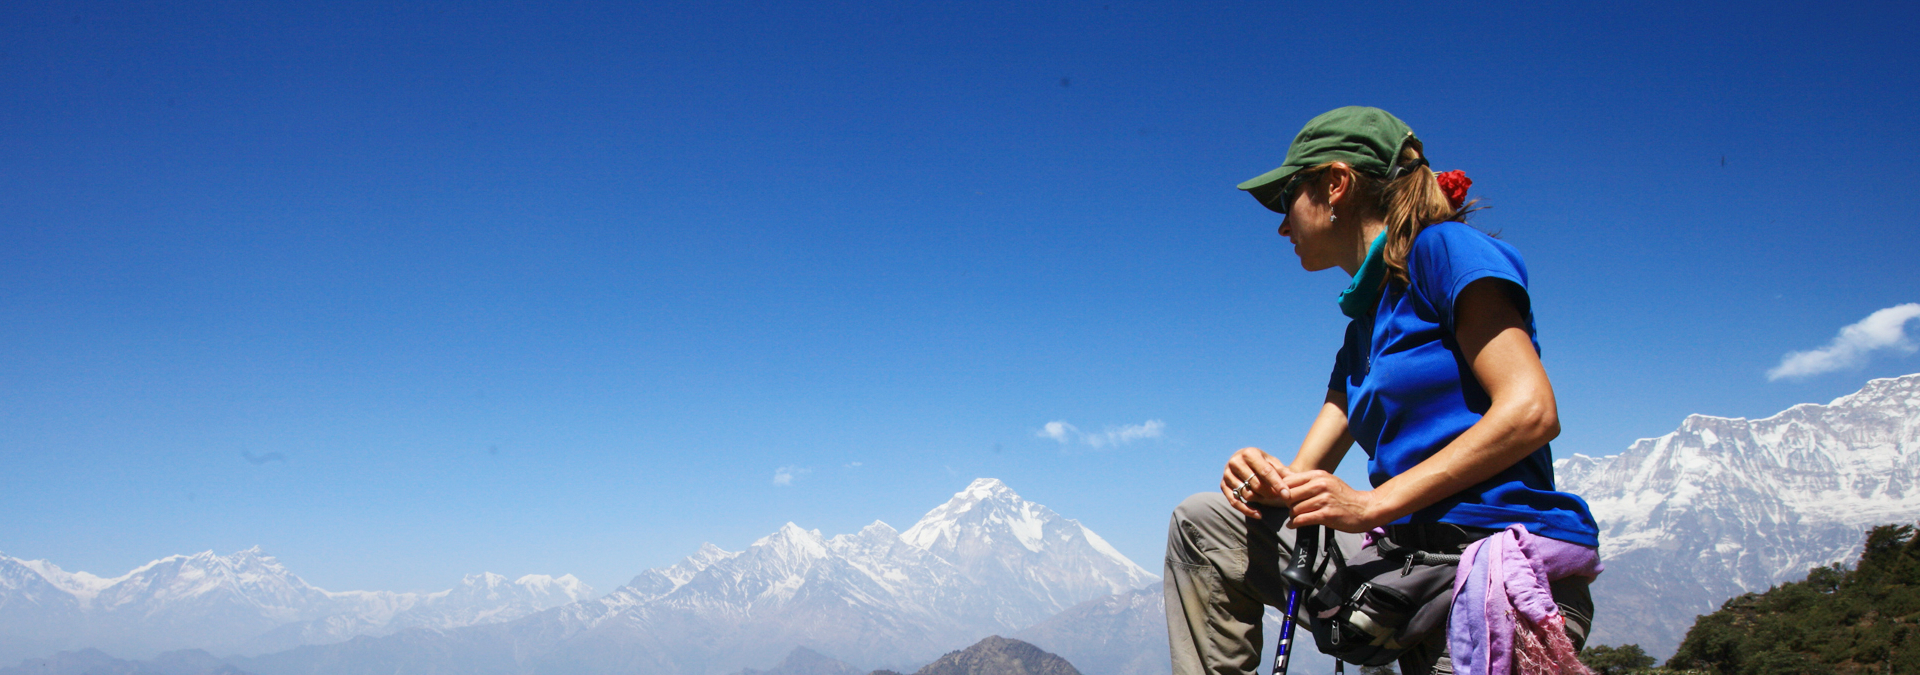 Western Region Trekking Nepal 